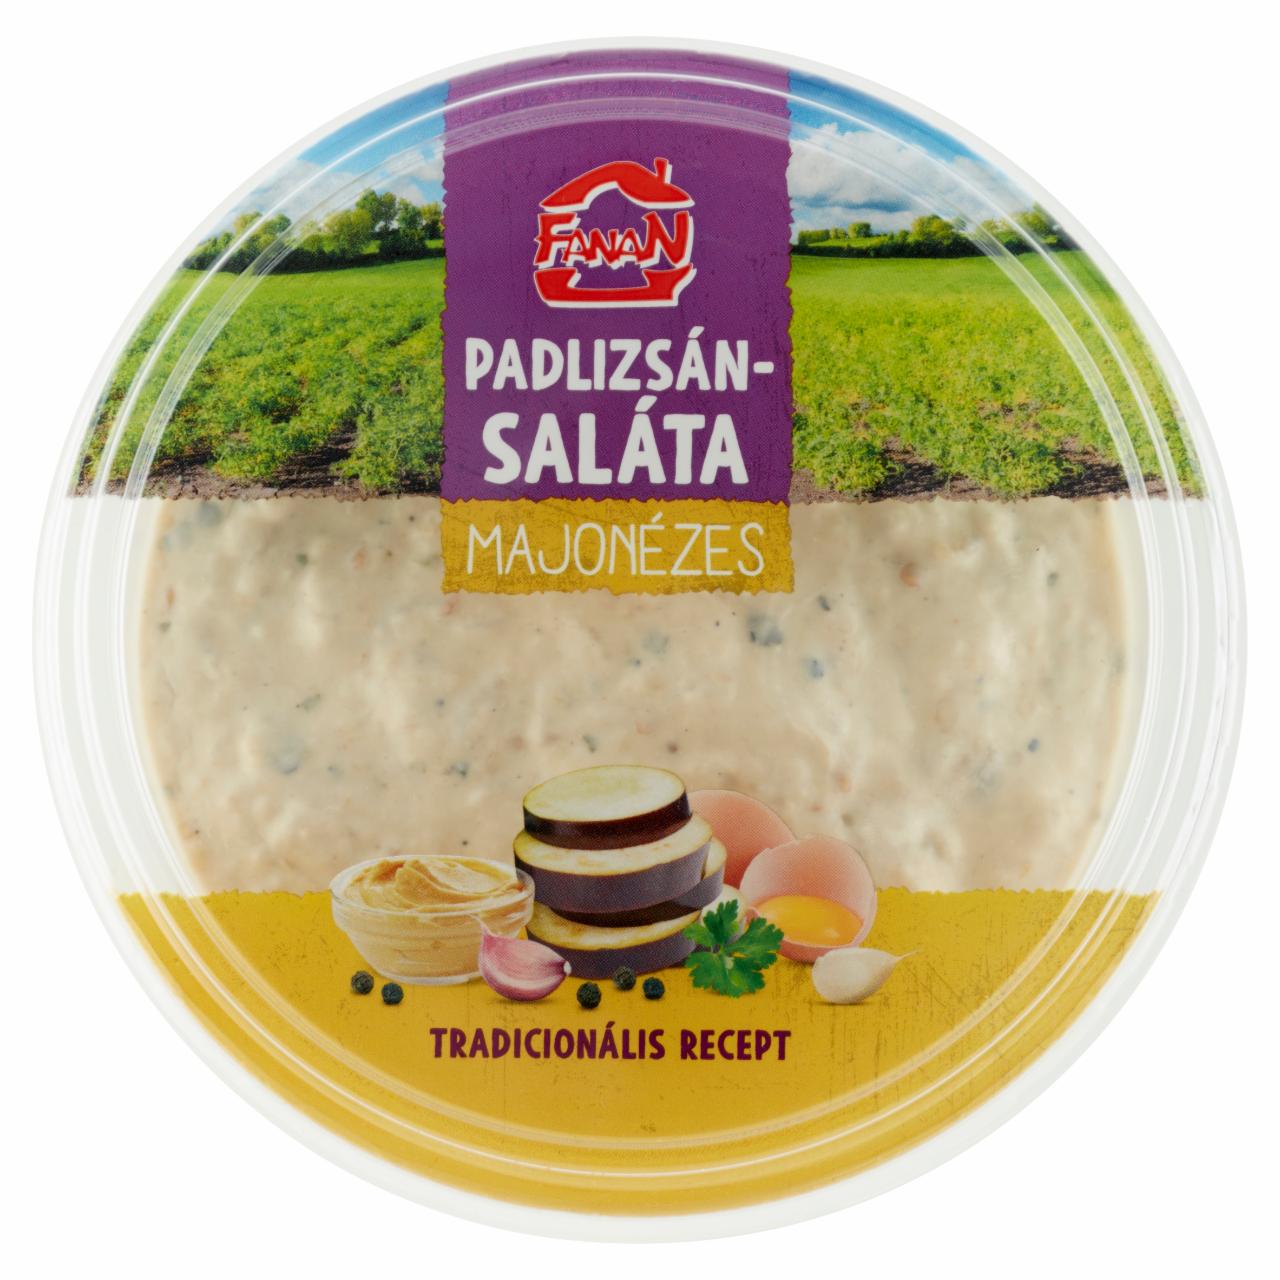 Képek - Fanan majonézes padlizsán saláta 200 g